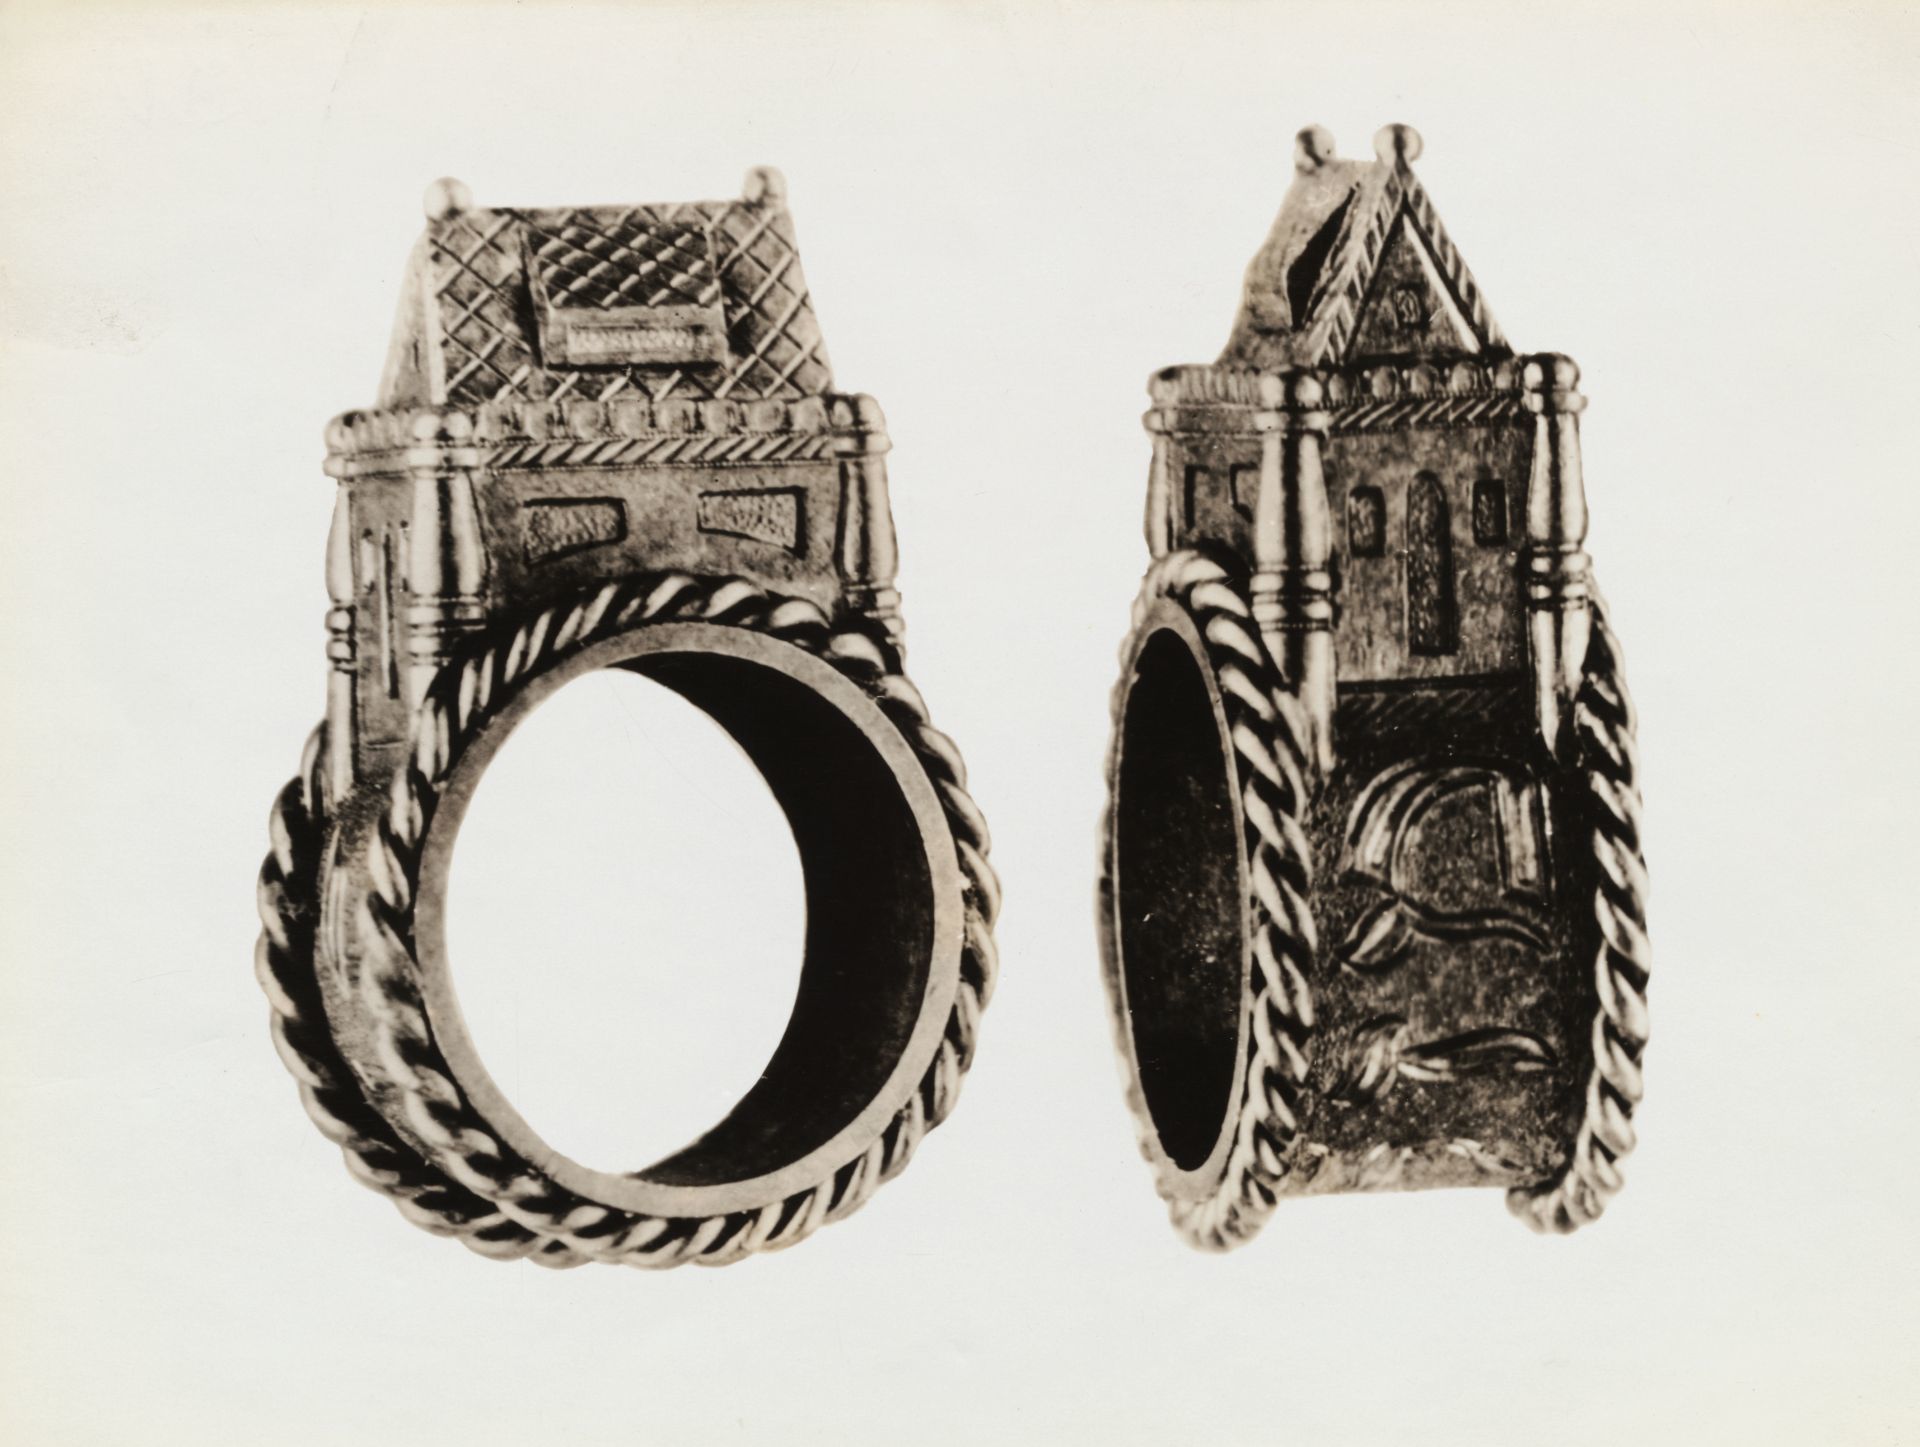 Salamon templomával díszített régi zsidő jegygyűrű.